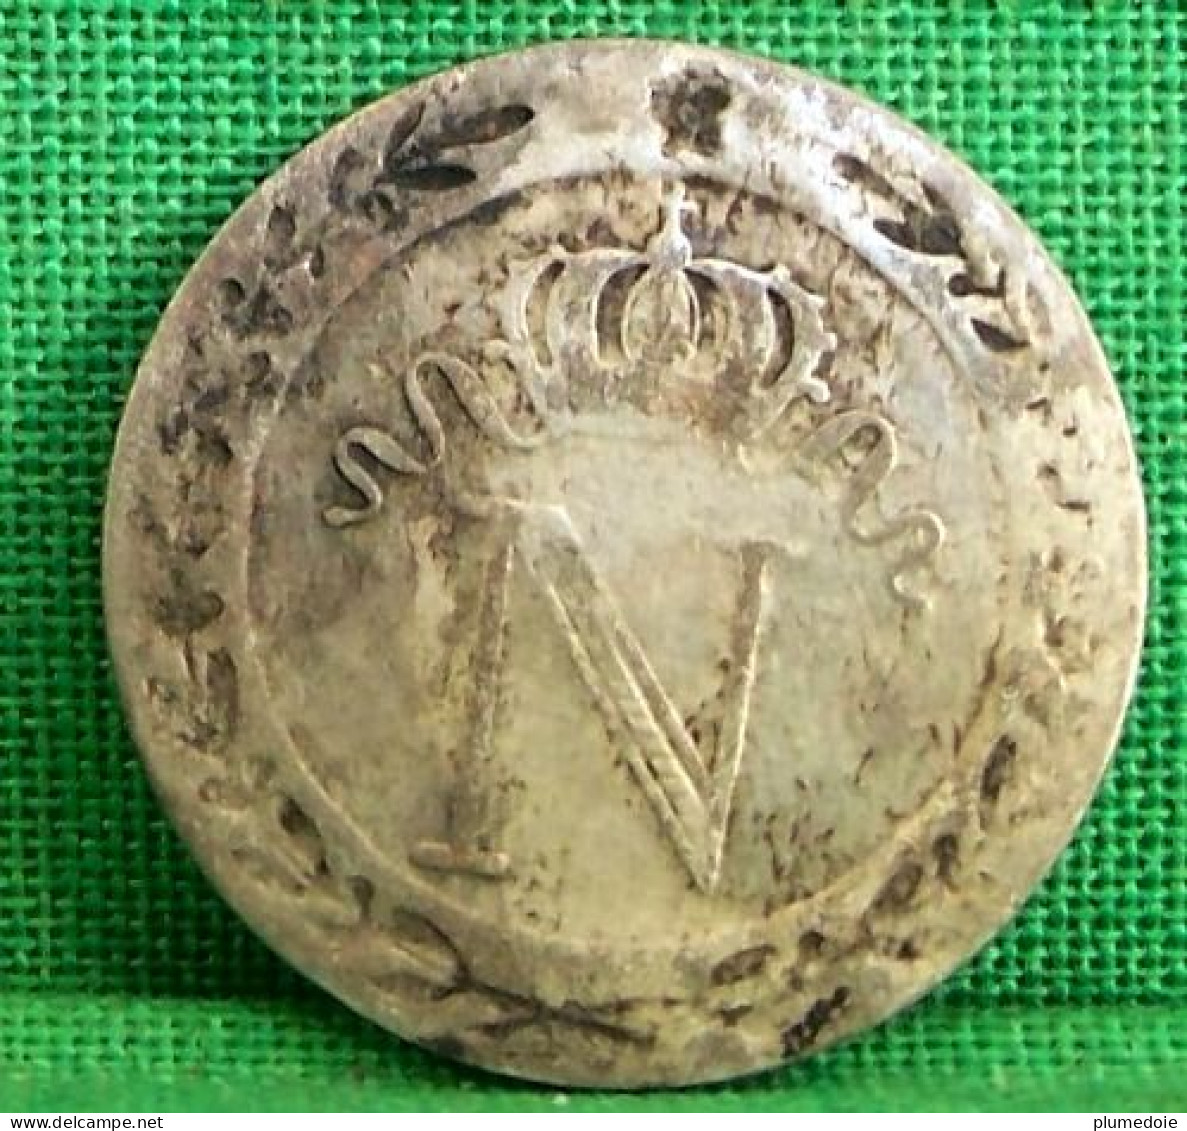 Monnaie FRANCE 10 Cent. à L'N COURONNE  1809 W LILLE NAPOLEON EMPEREUR Old Coin - 10 Centimes